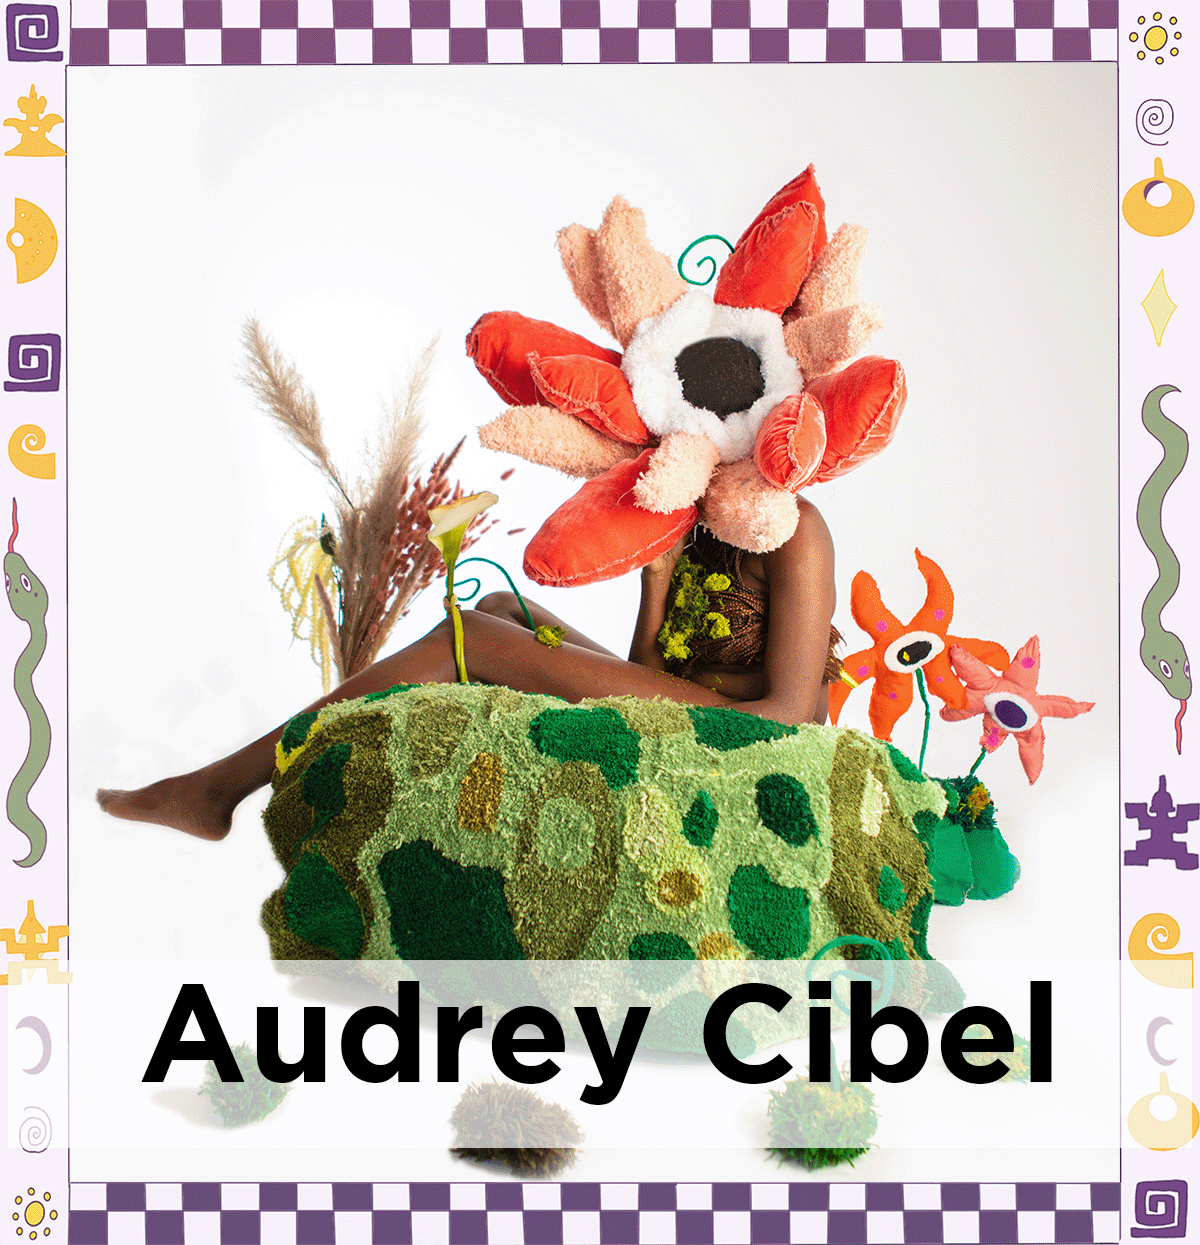 Audrey Cibel